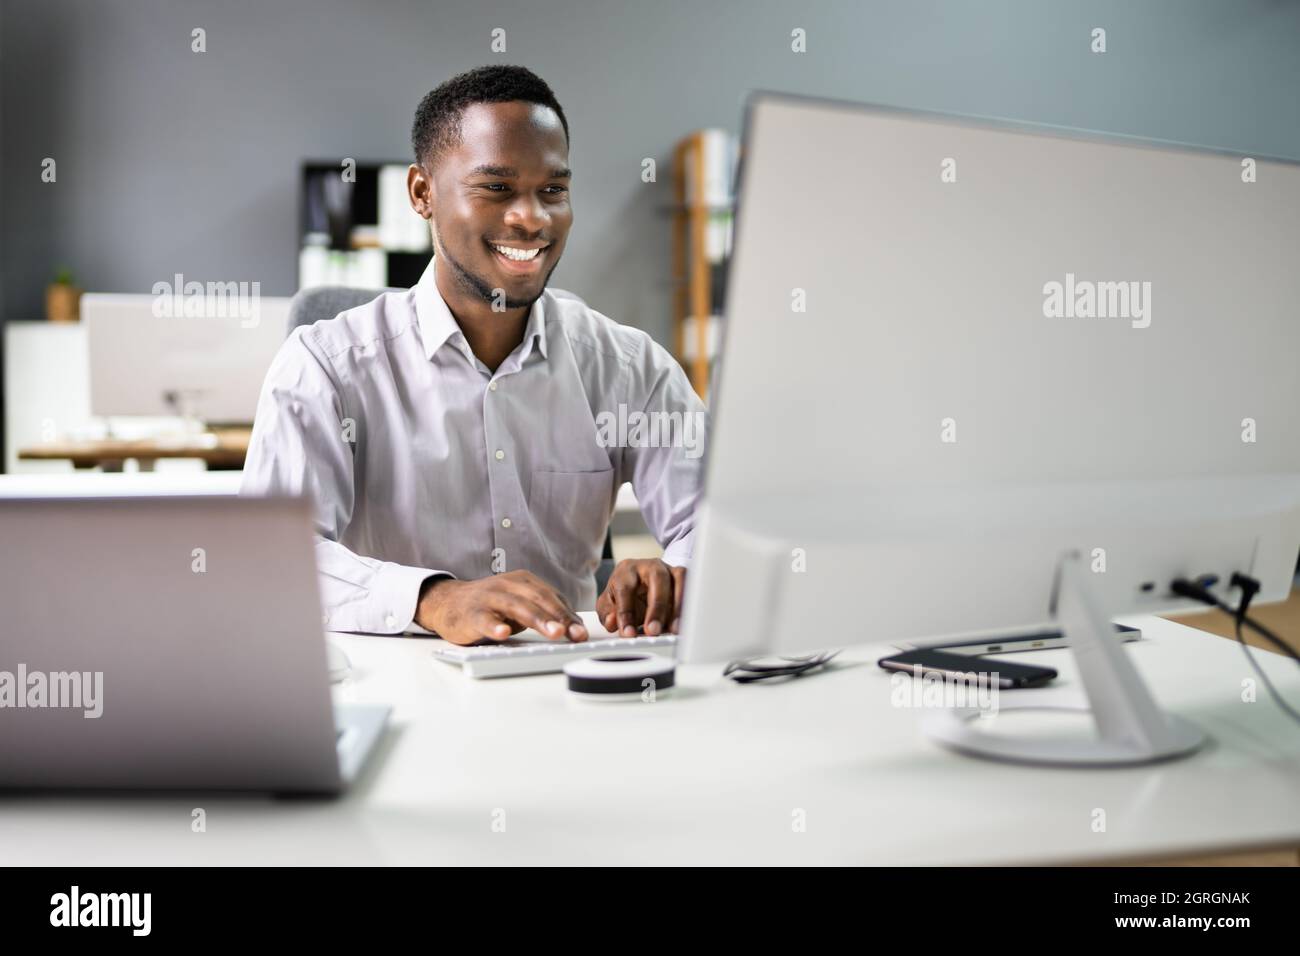 Un employé de Happy Professional Man utilisant l'ordinateur pour le travail Banque D'Images